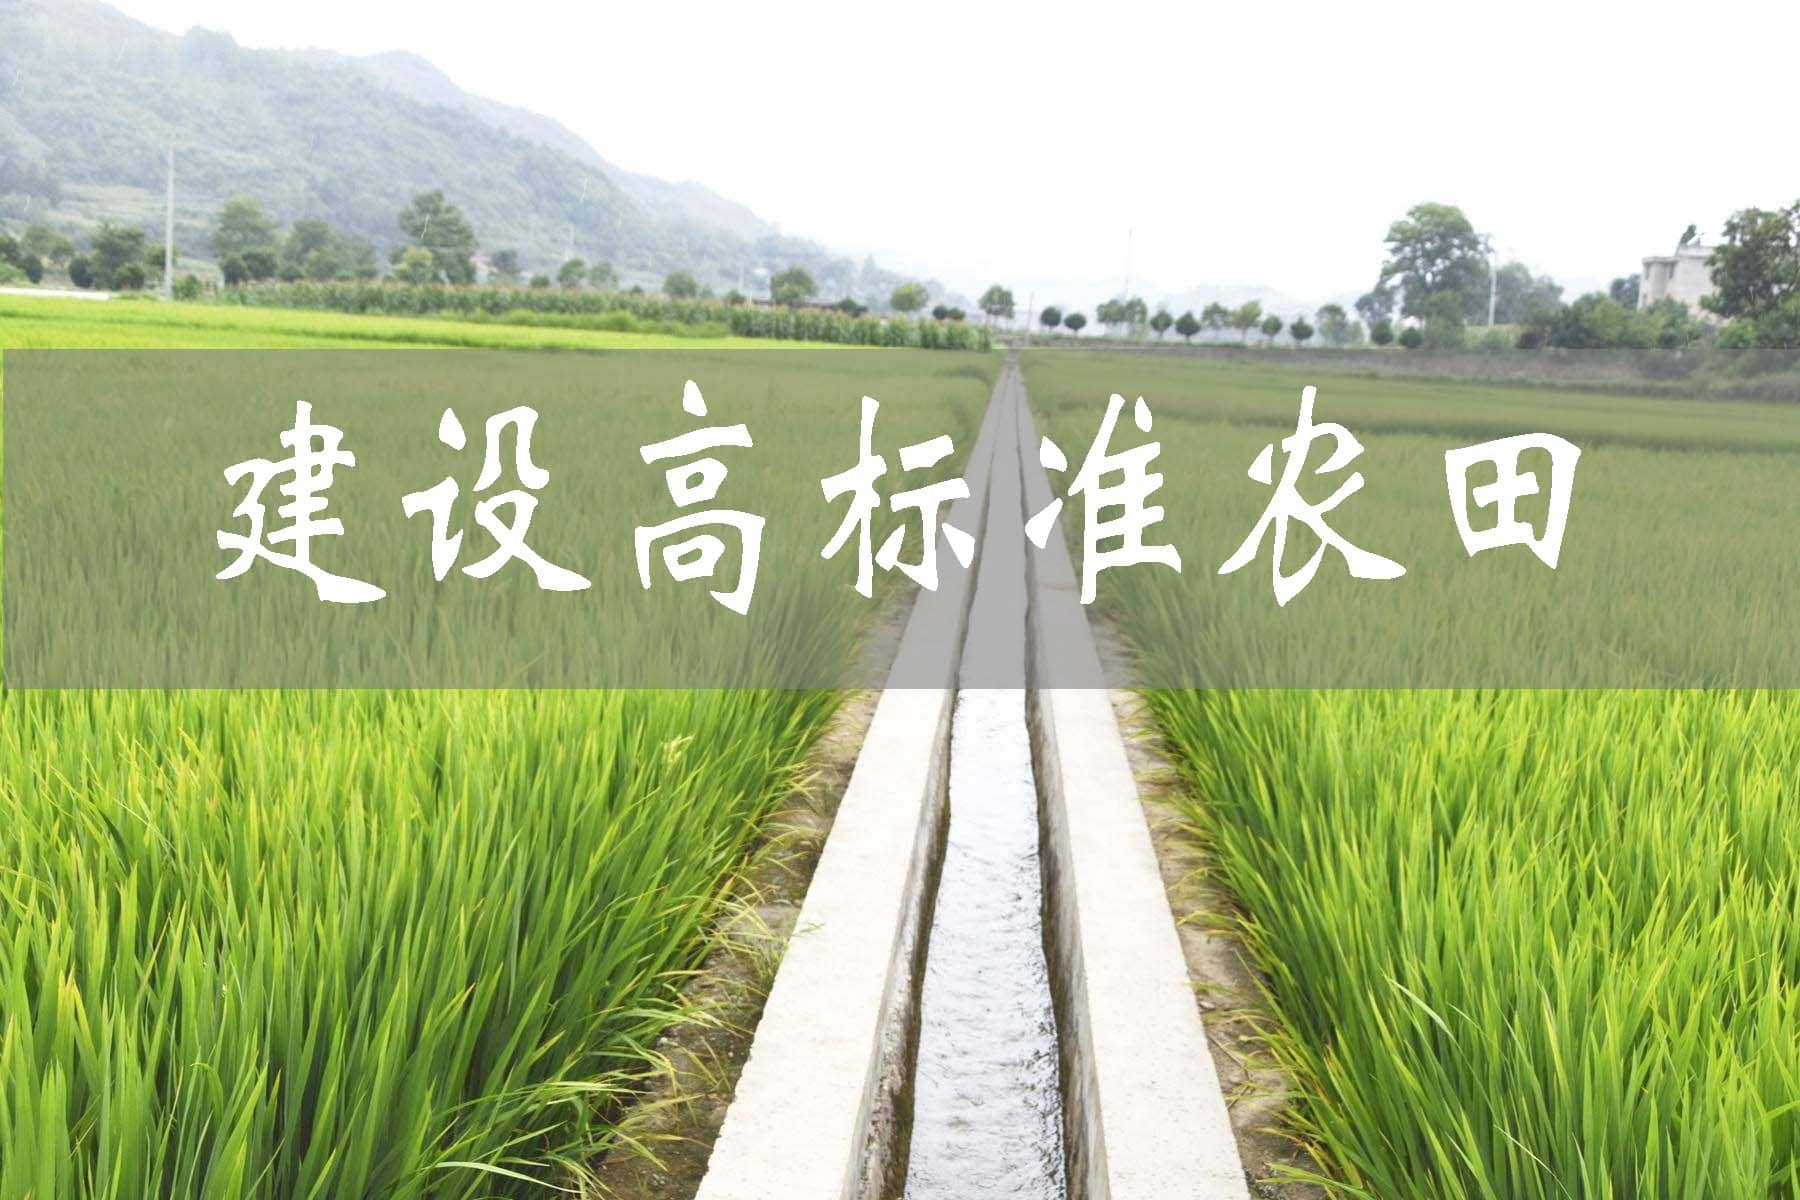 靖州建设高标准农田1.89万亩 促进农业高质量发展